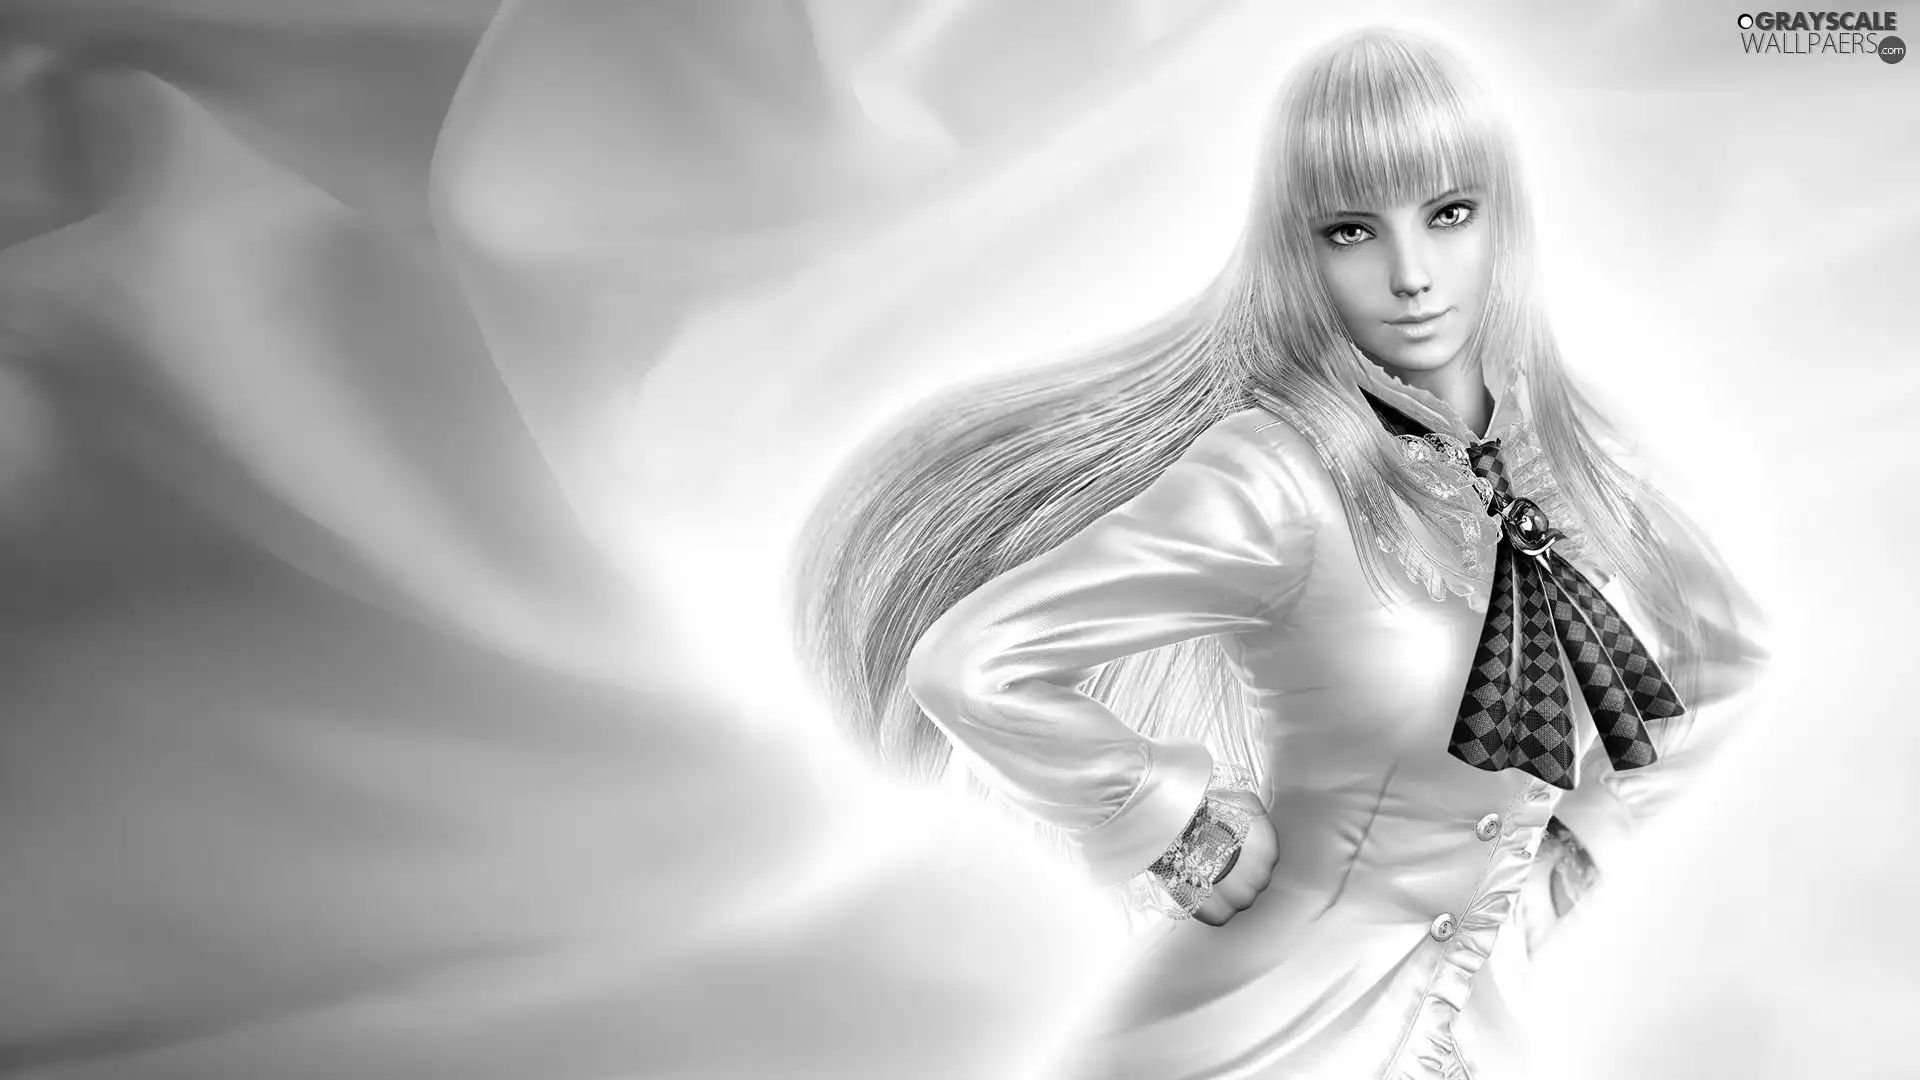 lily, Tekken 5, longhaired, Blonde, Beauty